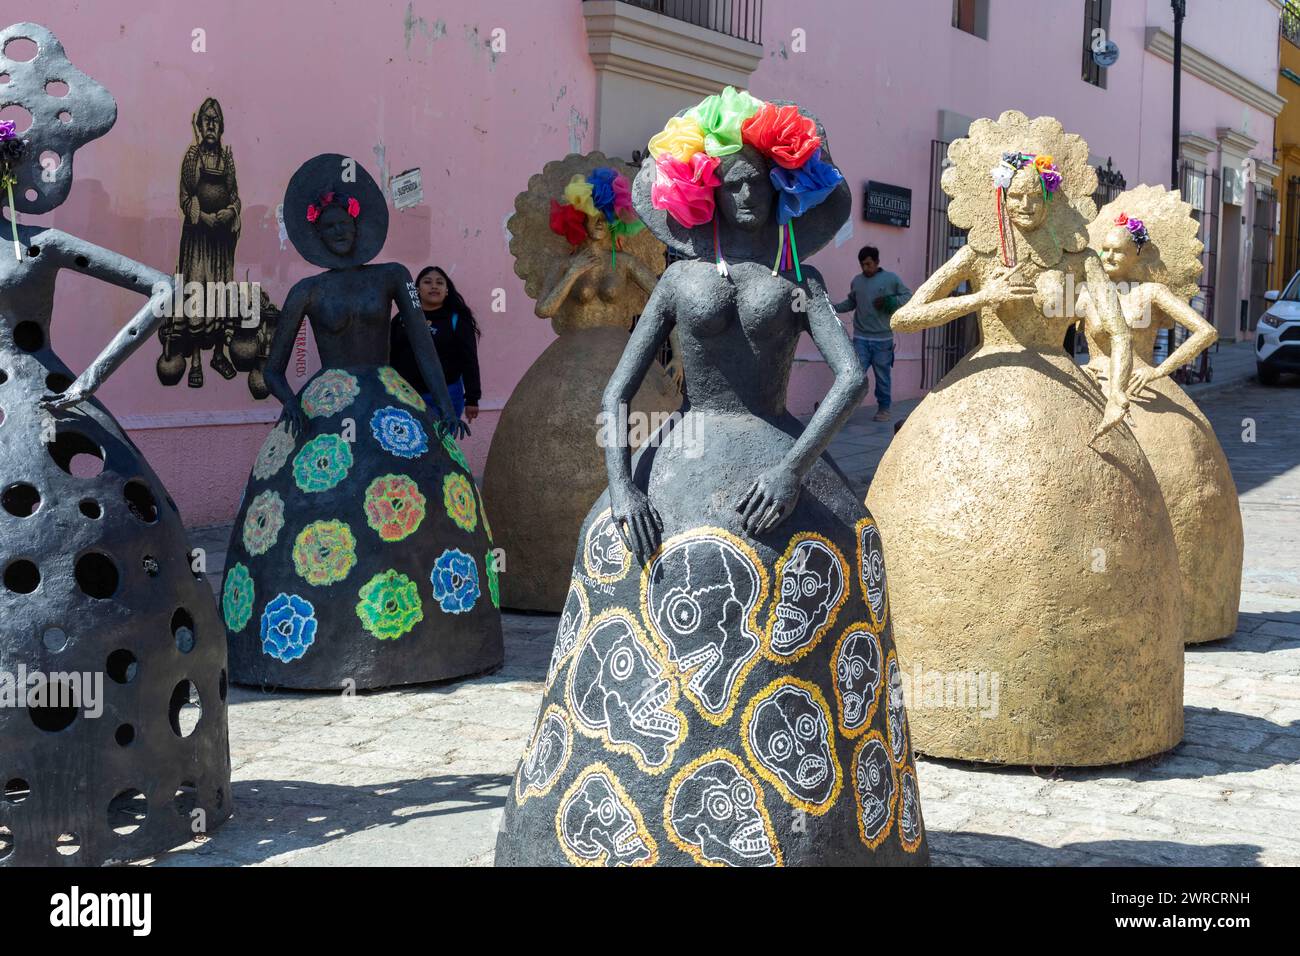 Oaxaca, México - Esculturas de mujeres en la calle peatonal. Foto de stock